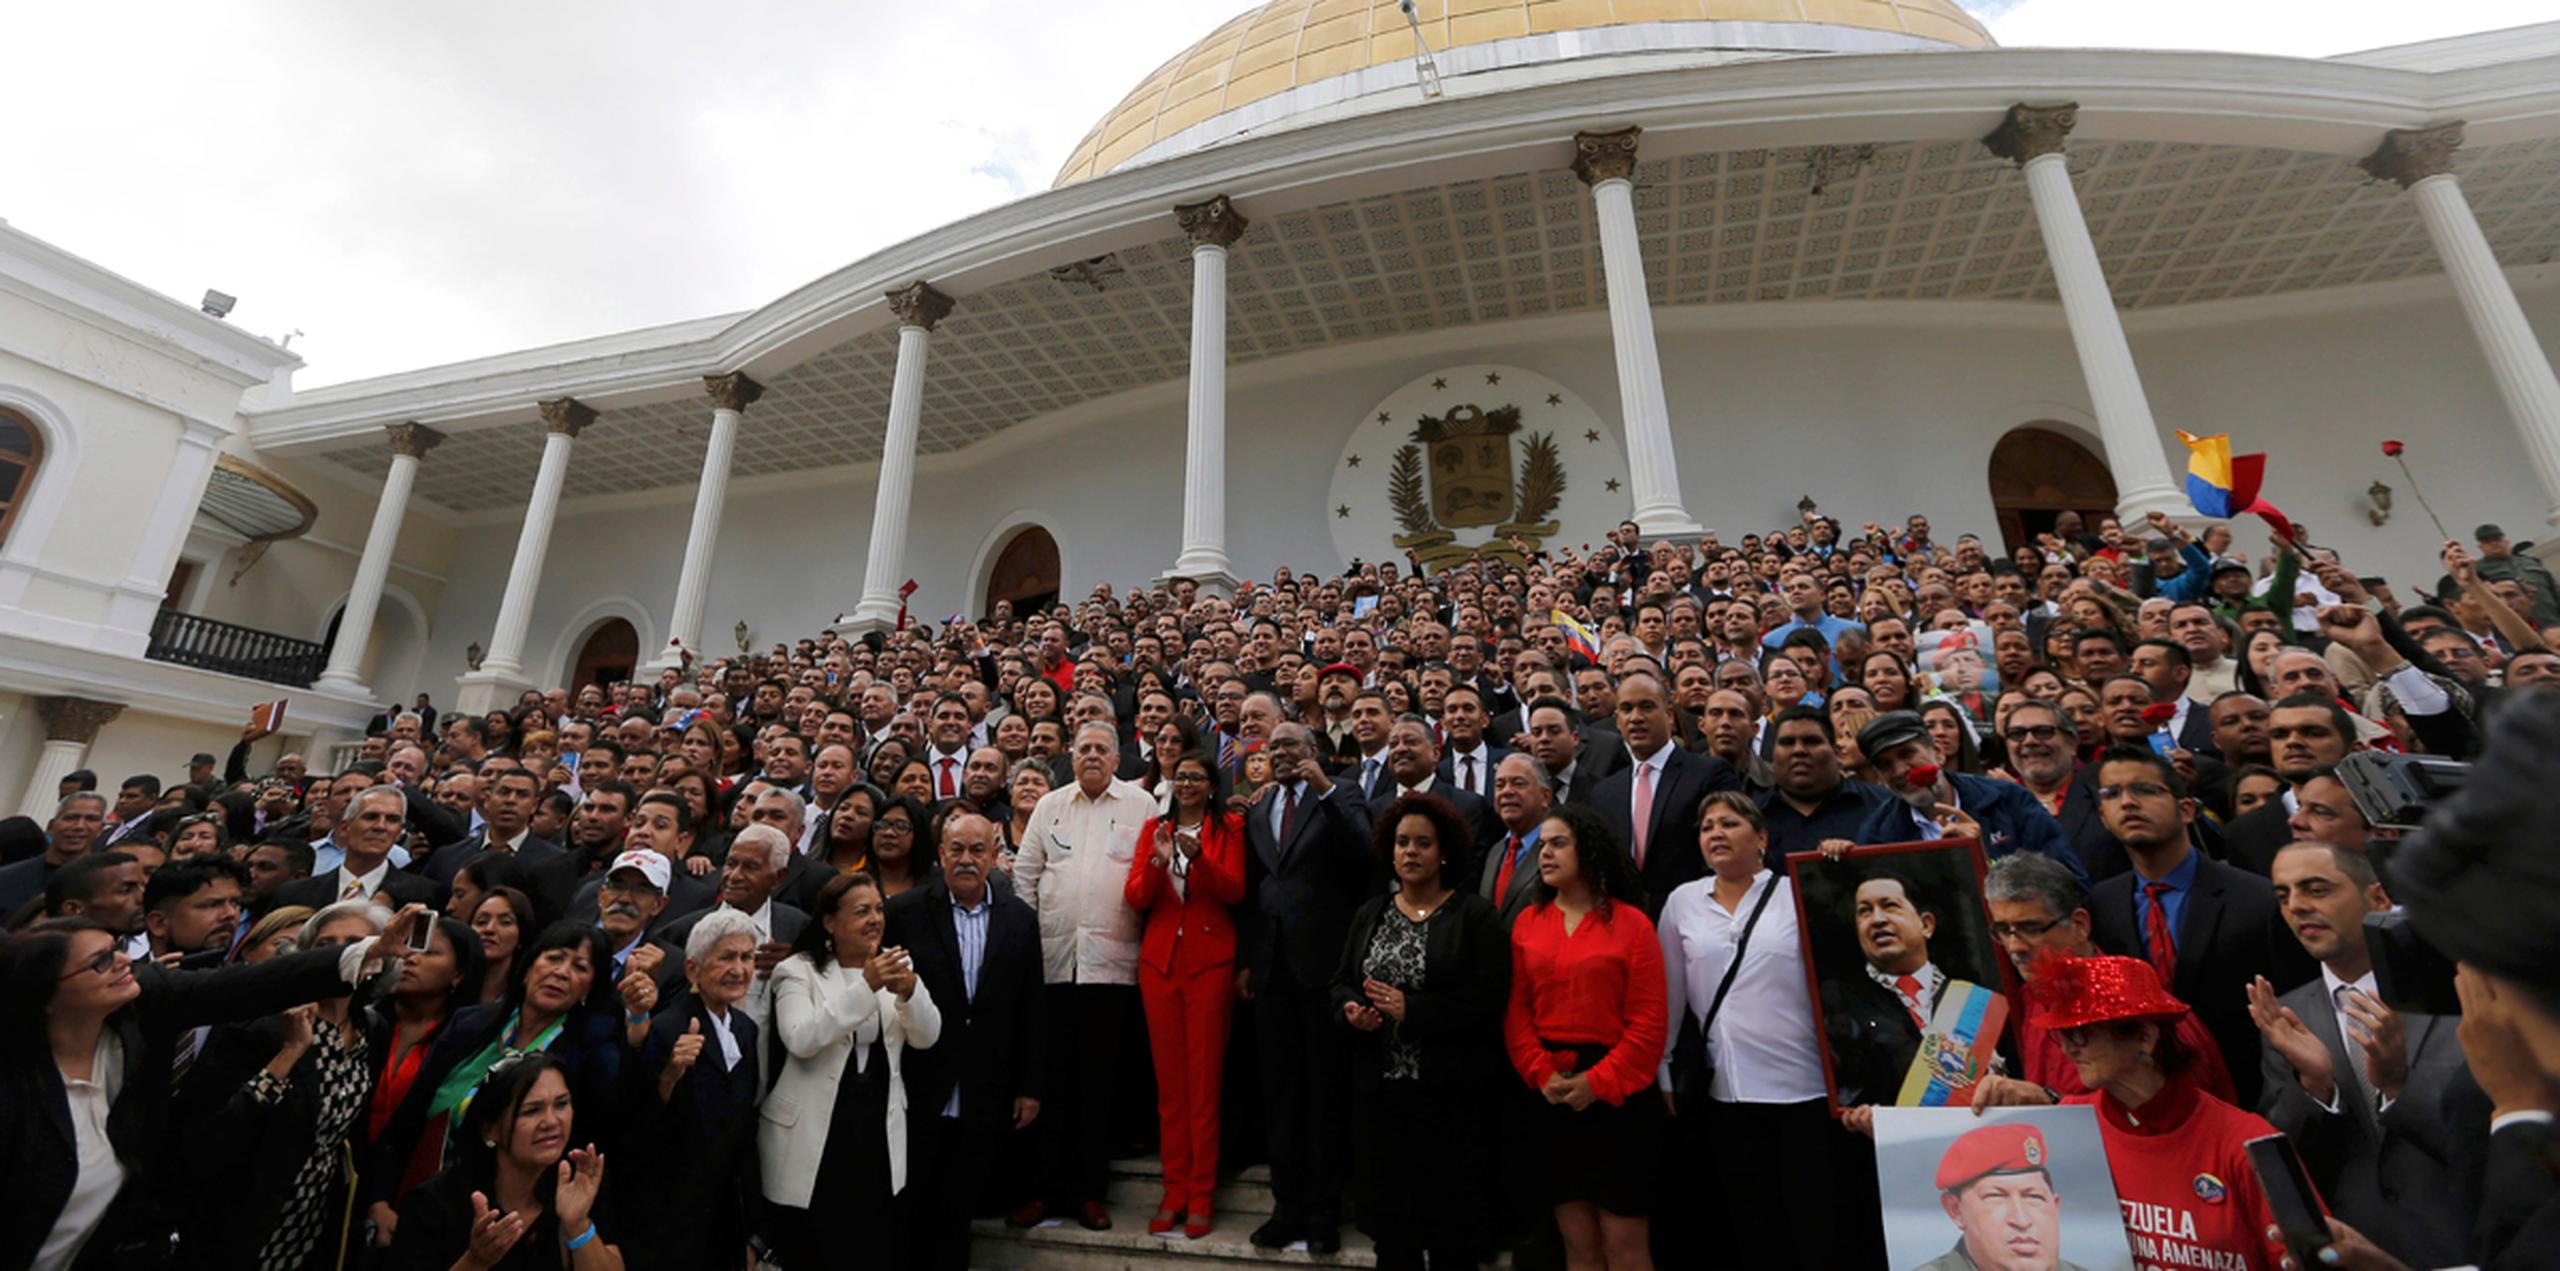 Los miembros de la Asamblea Nacional Constituyente de Venezuela posan para una fotografía tras su toma de posesión, en la Asamblea Nacional, en Caracas, Venezuela.  (AP)